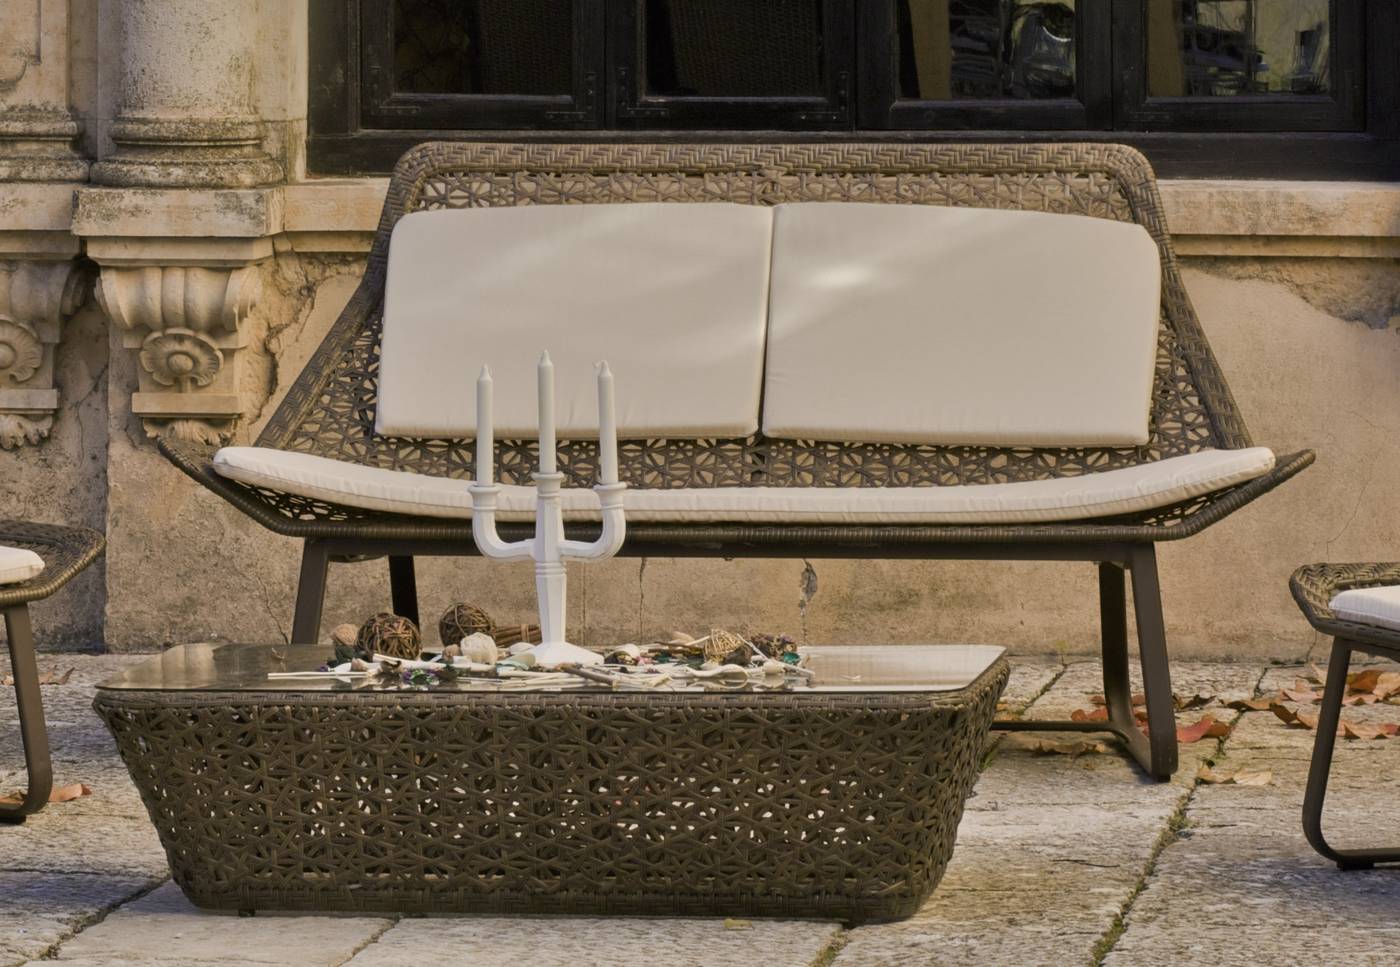 Conjunto Ratán Sint. Torino-8 - Conjunto para terraza o jardín de ratán sintético color marrón: sofá 2 plazas + mesa de centro